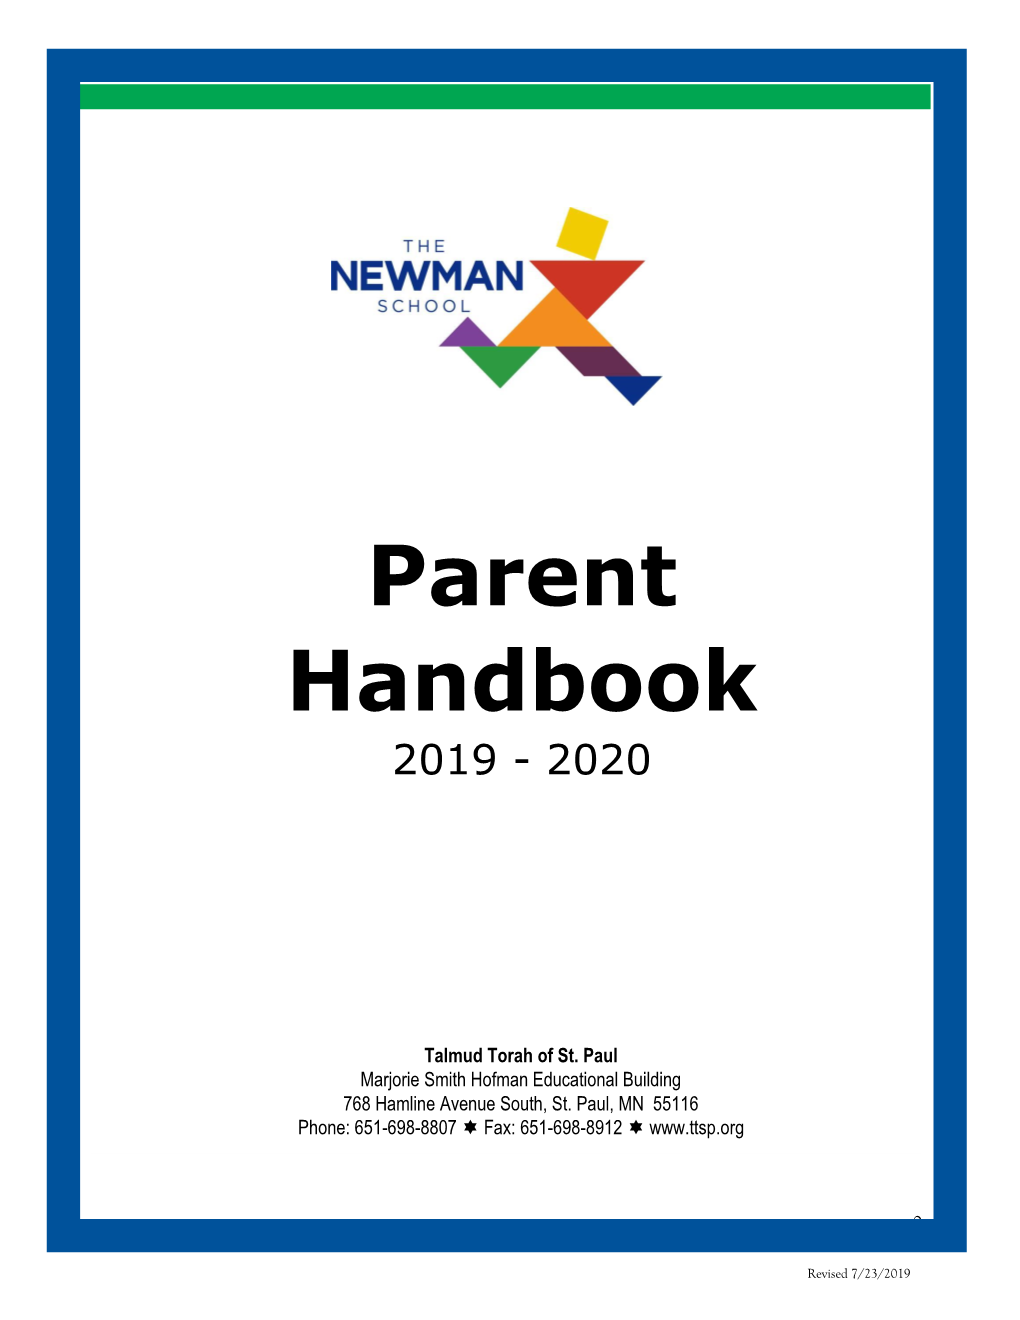 Newman School Parent Handbook